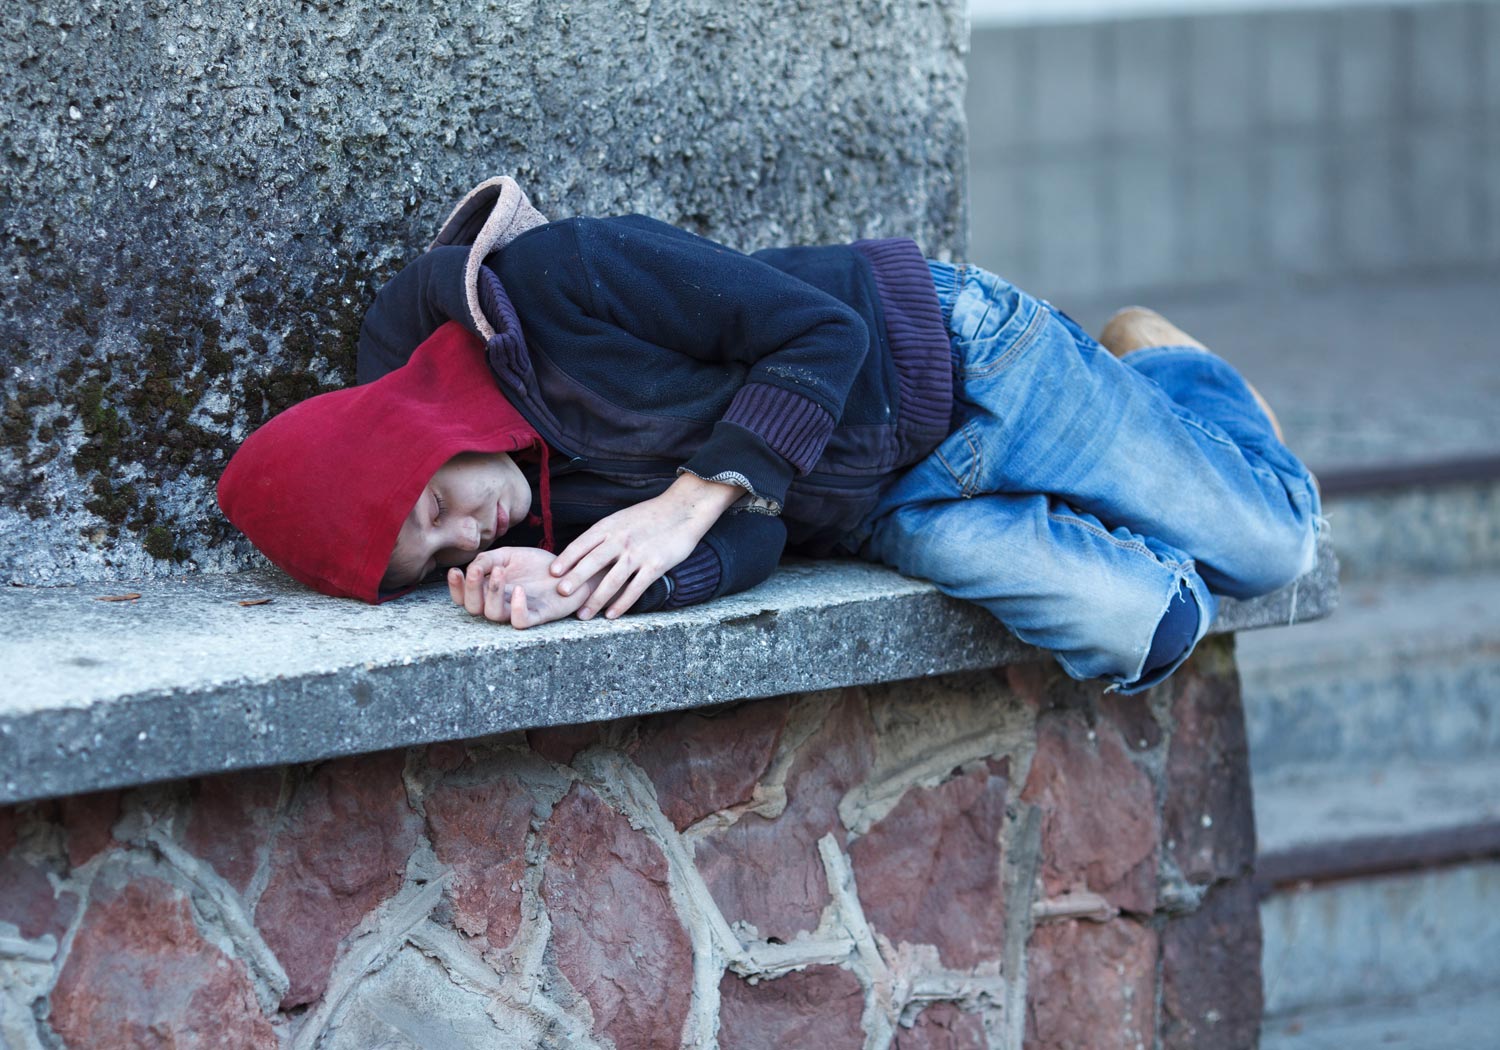 Street sleeping. Бездомные дети спят на улице.